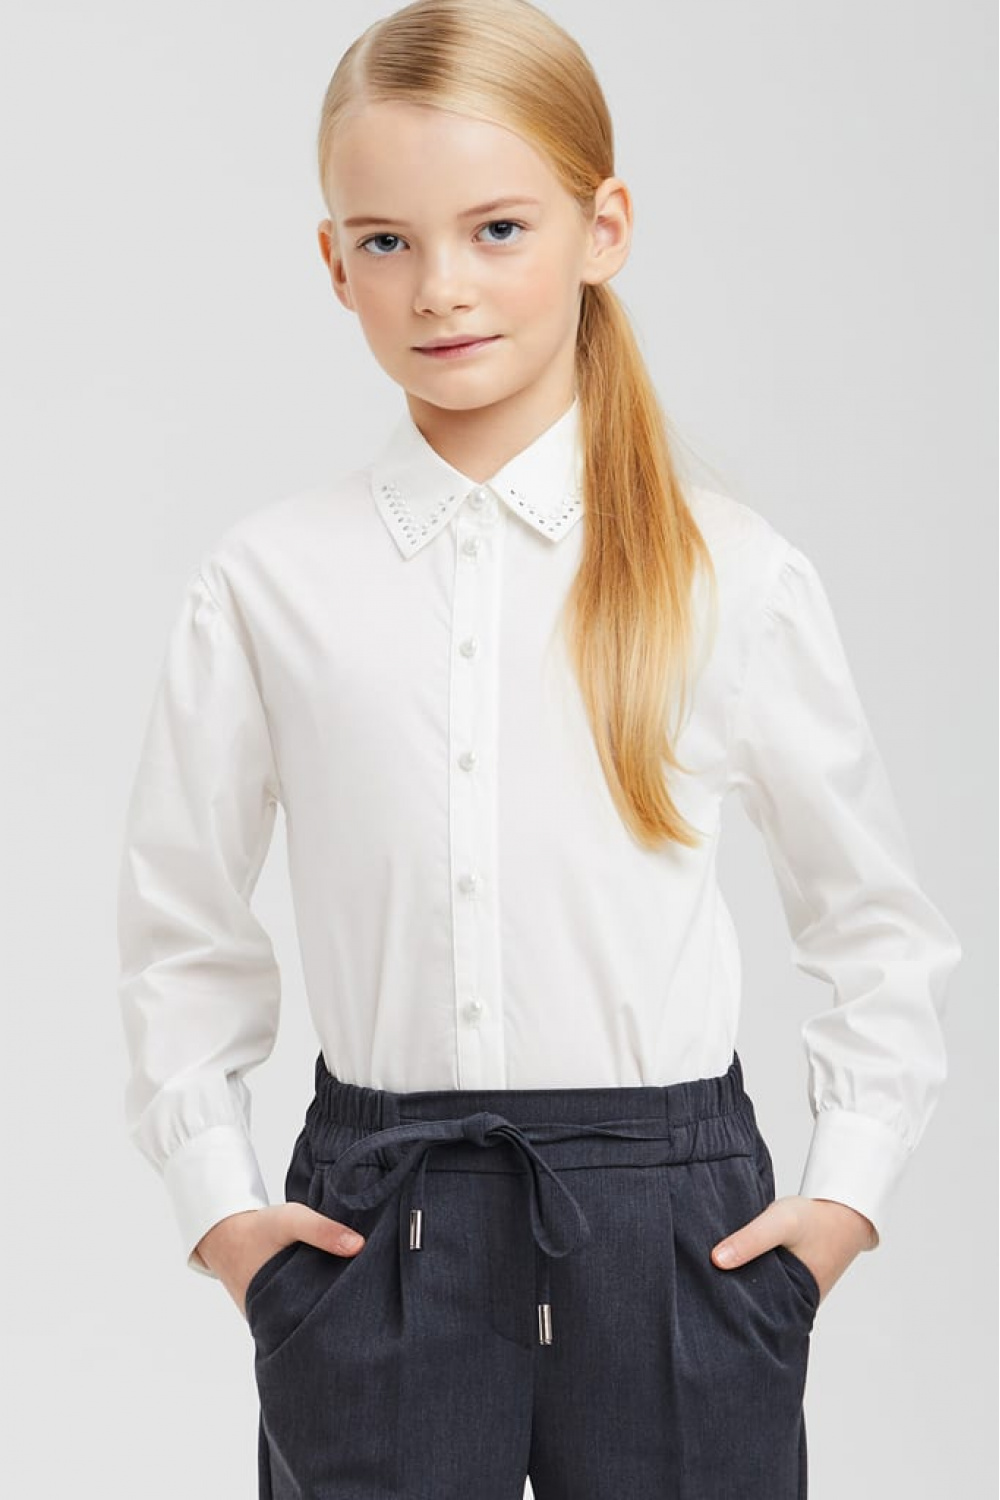 Хлопковая блузка с пуговицами-жемчужинами  (SSFSG-029-23010-201) Silver spoon